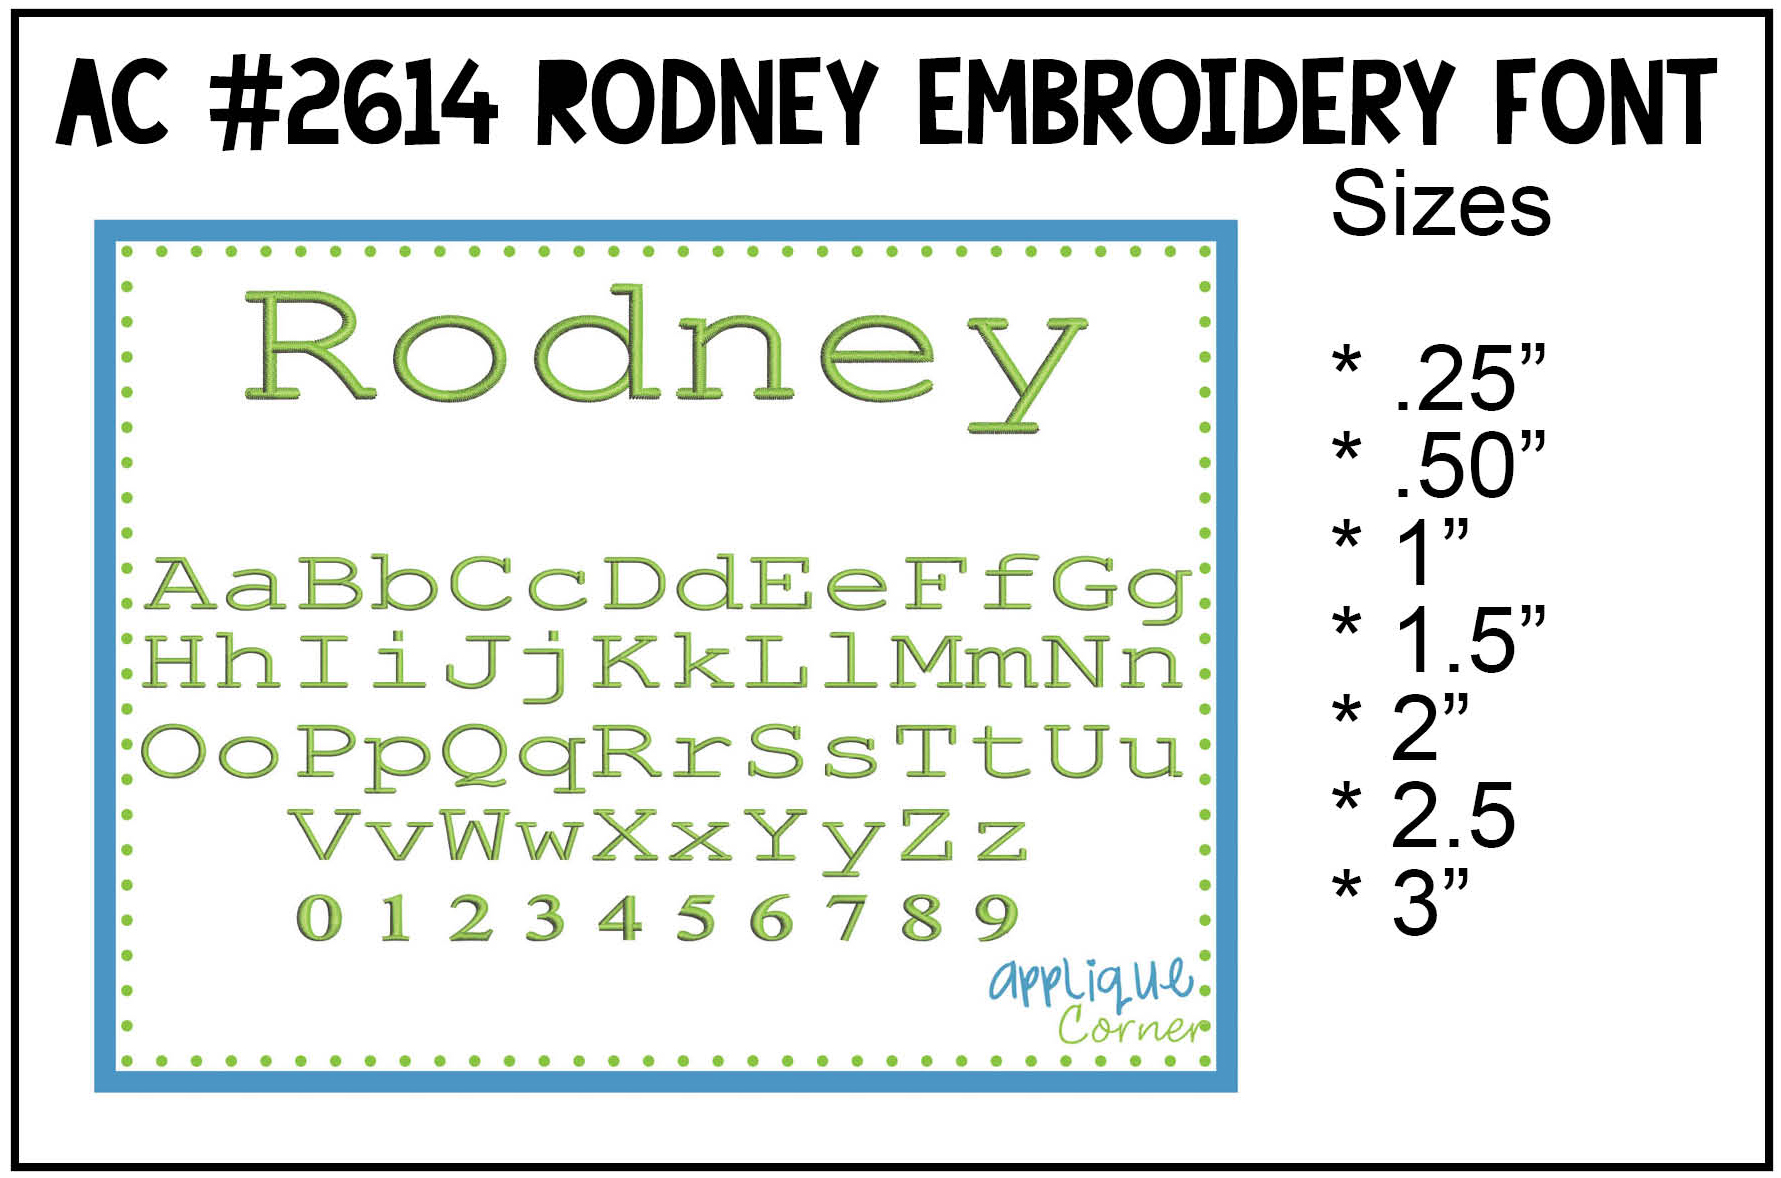 Rodney Embroidery Font